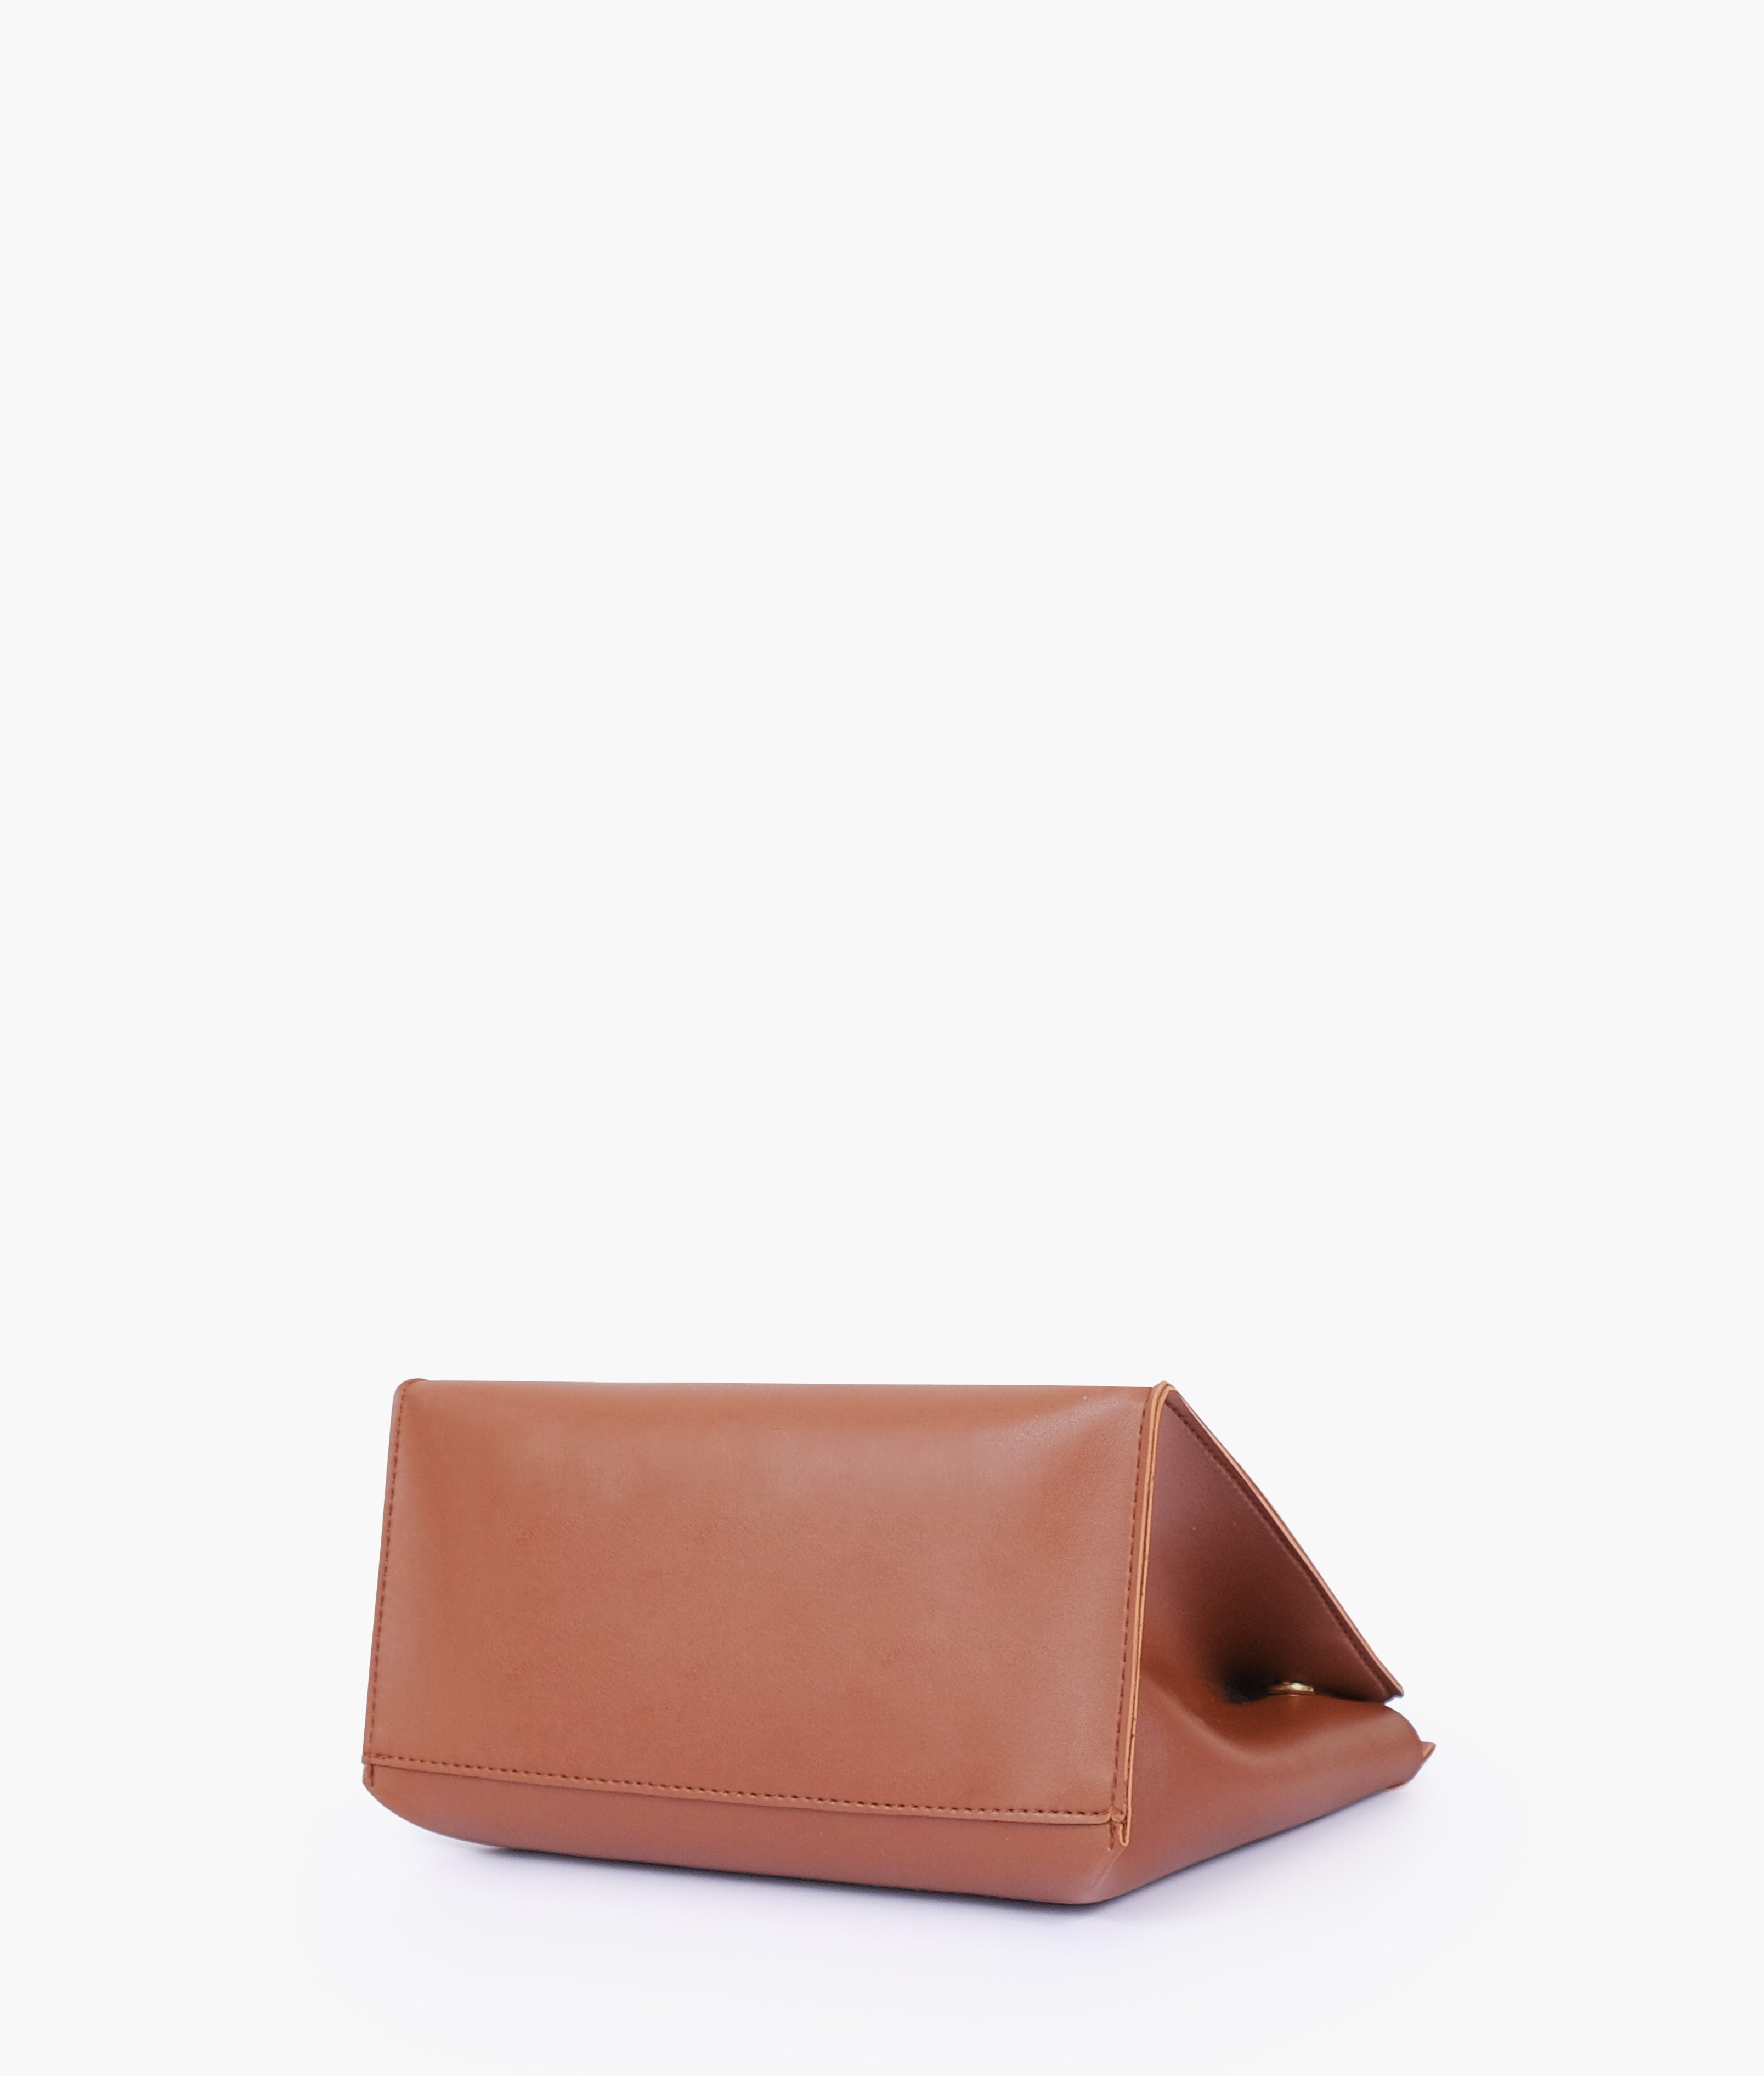 Brown front lock top-handle mini bag